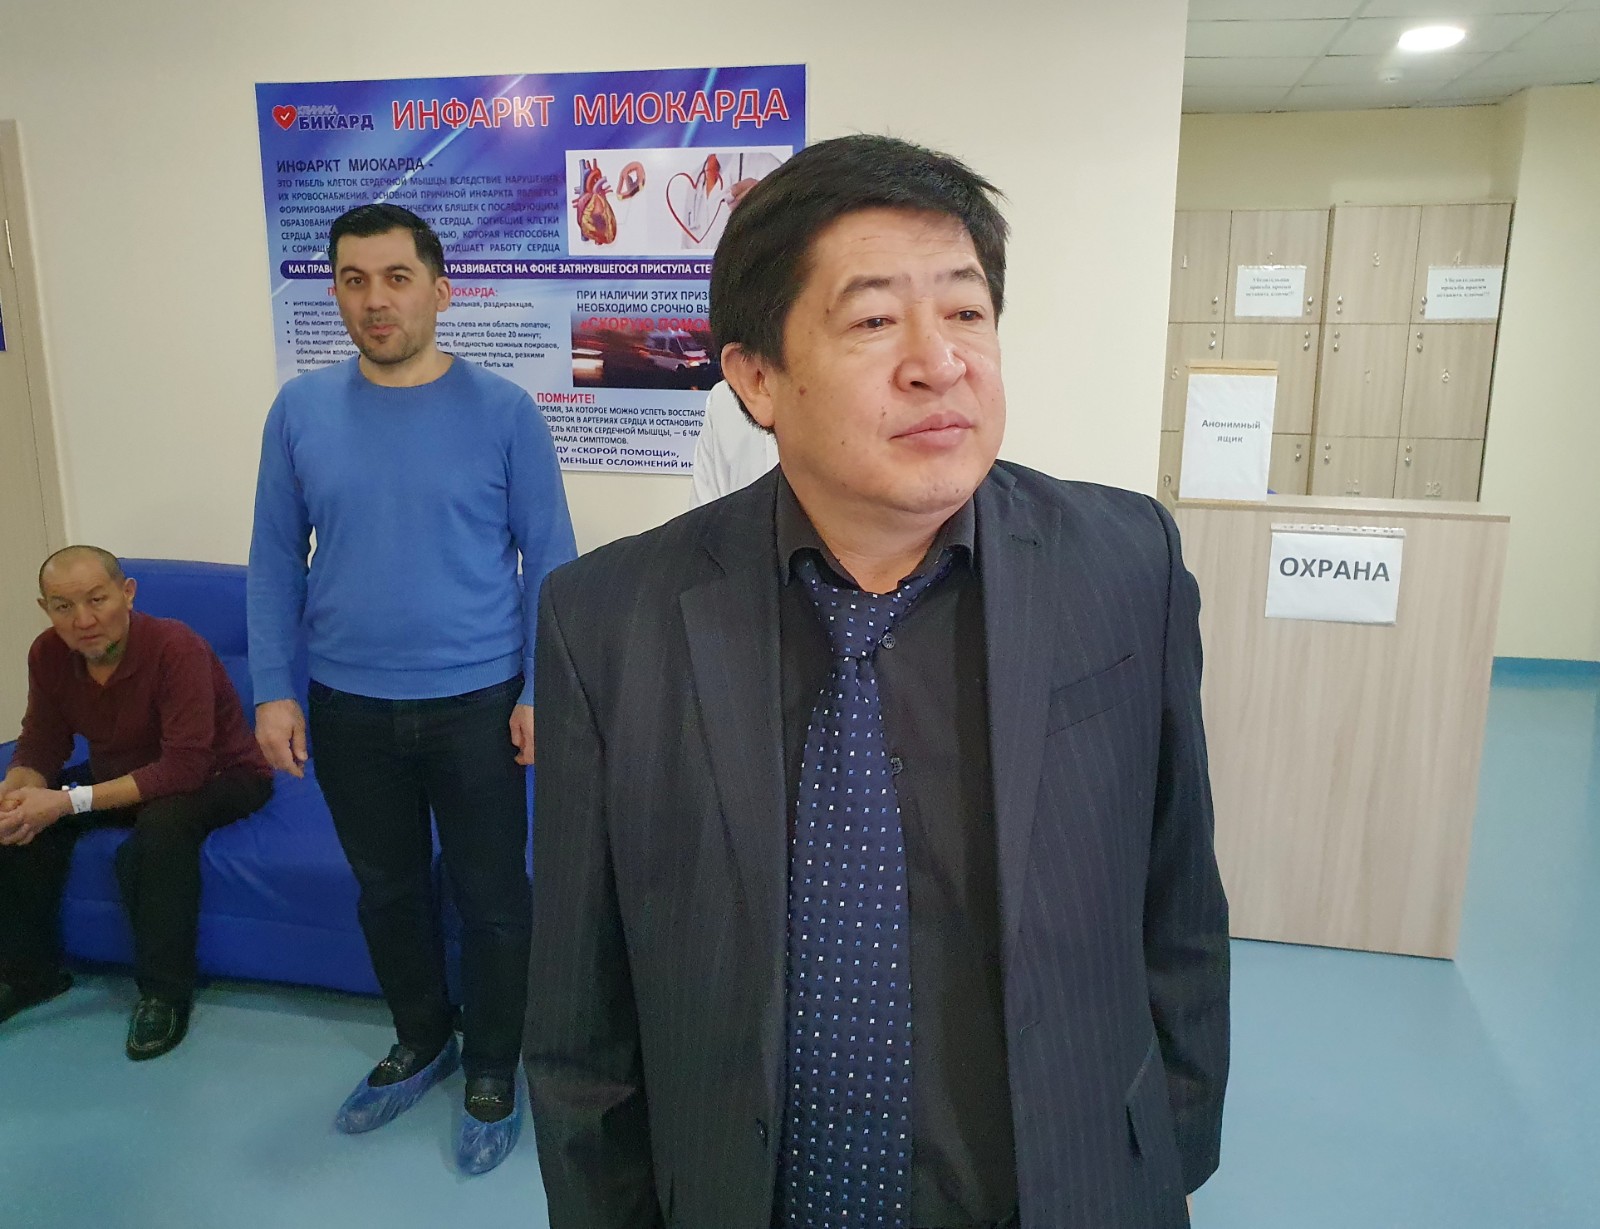 Камчыбек Исабаев: По моим прогнозам, мы достигнем пика коронавируса только в мае